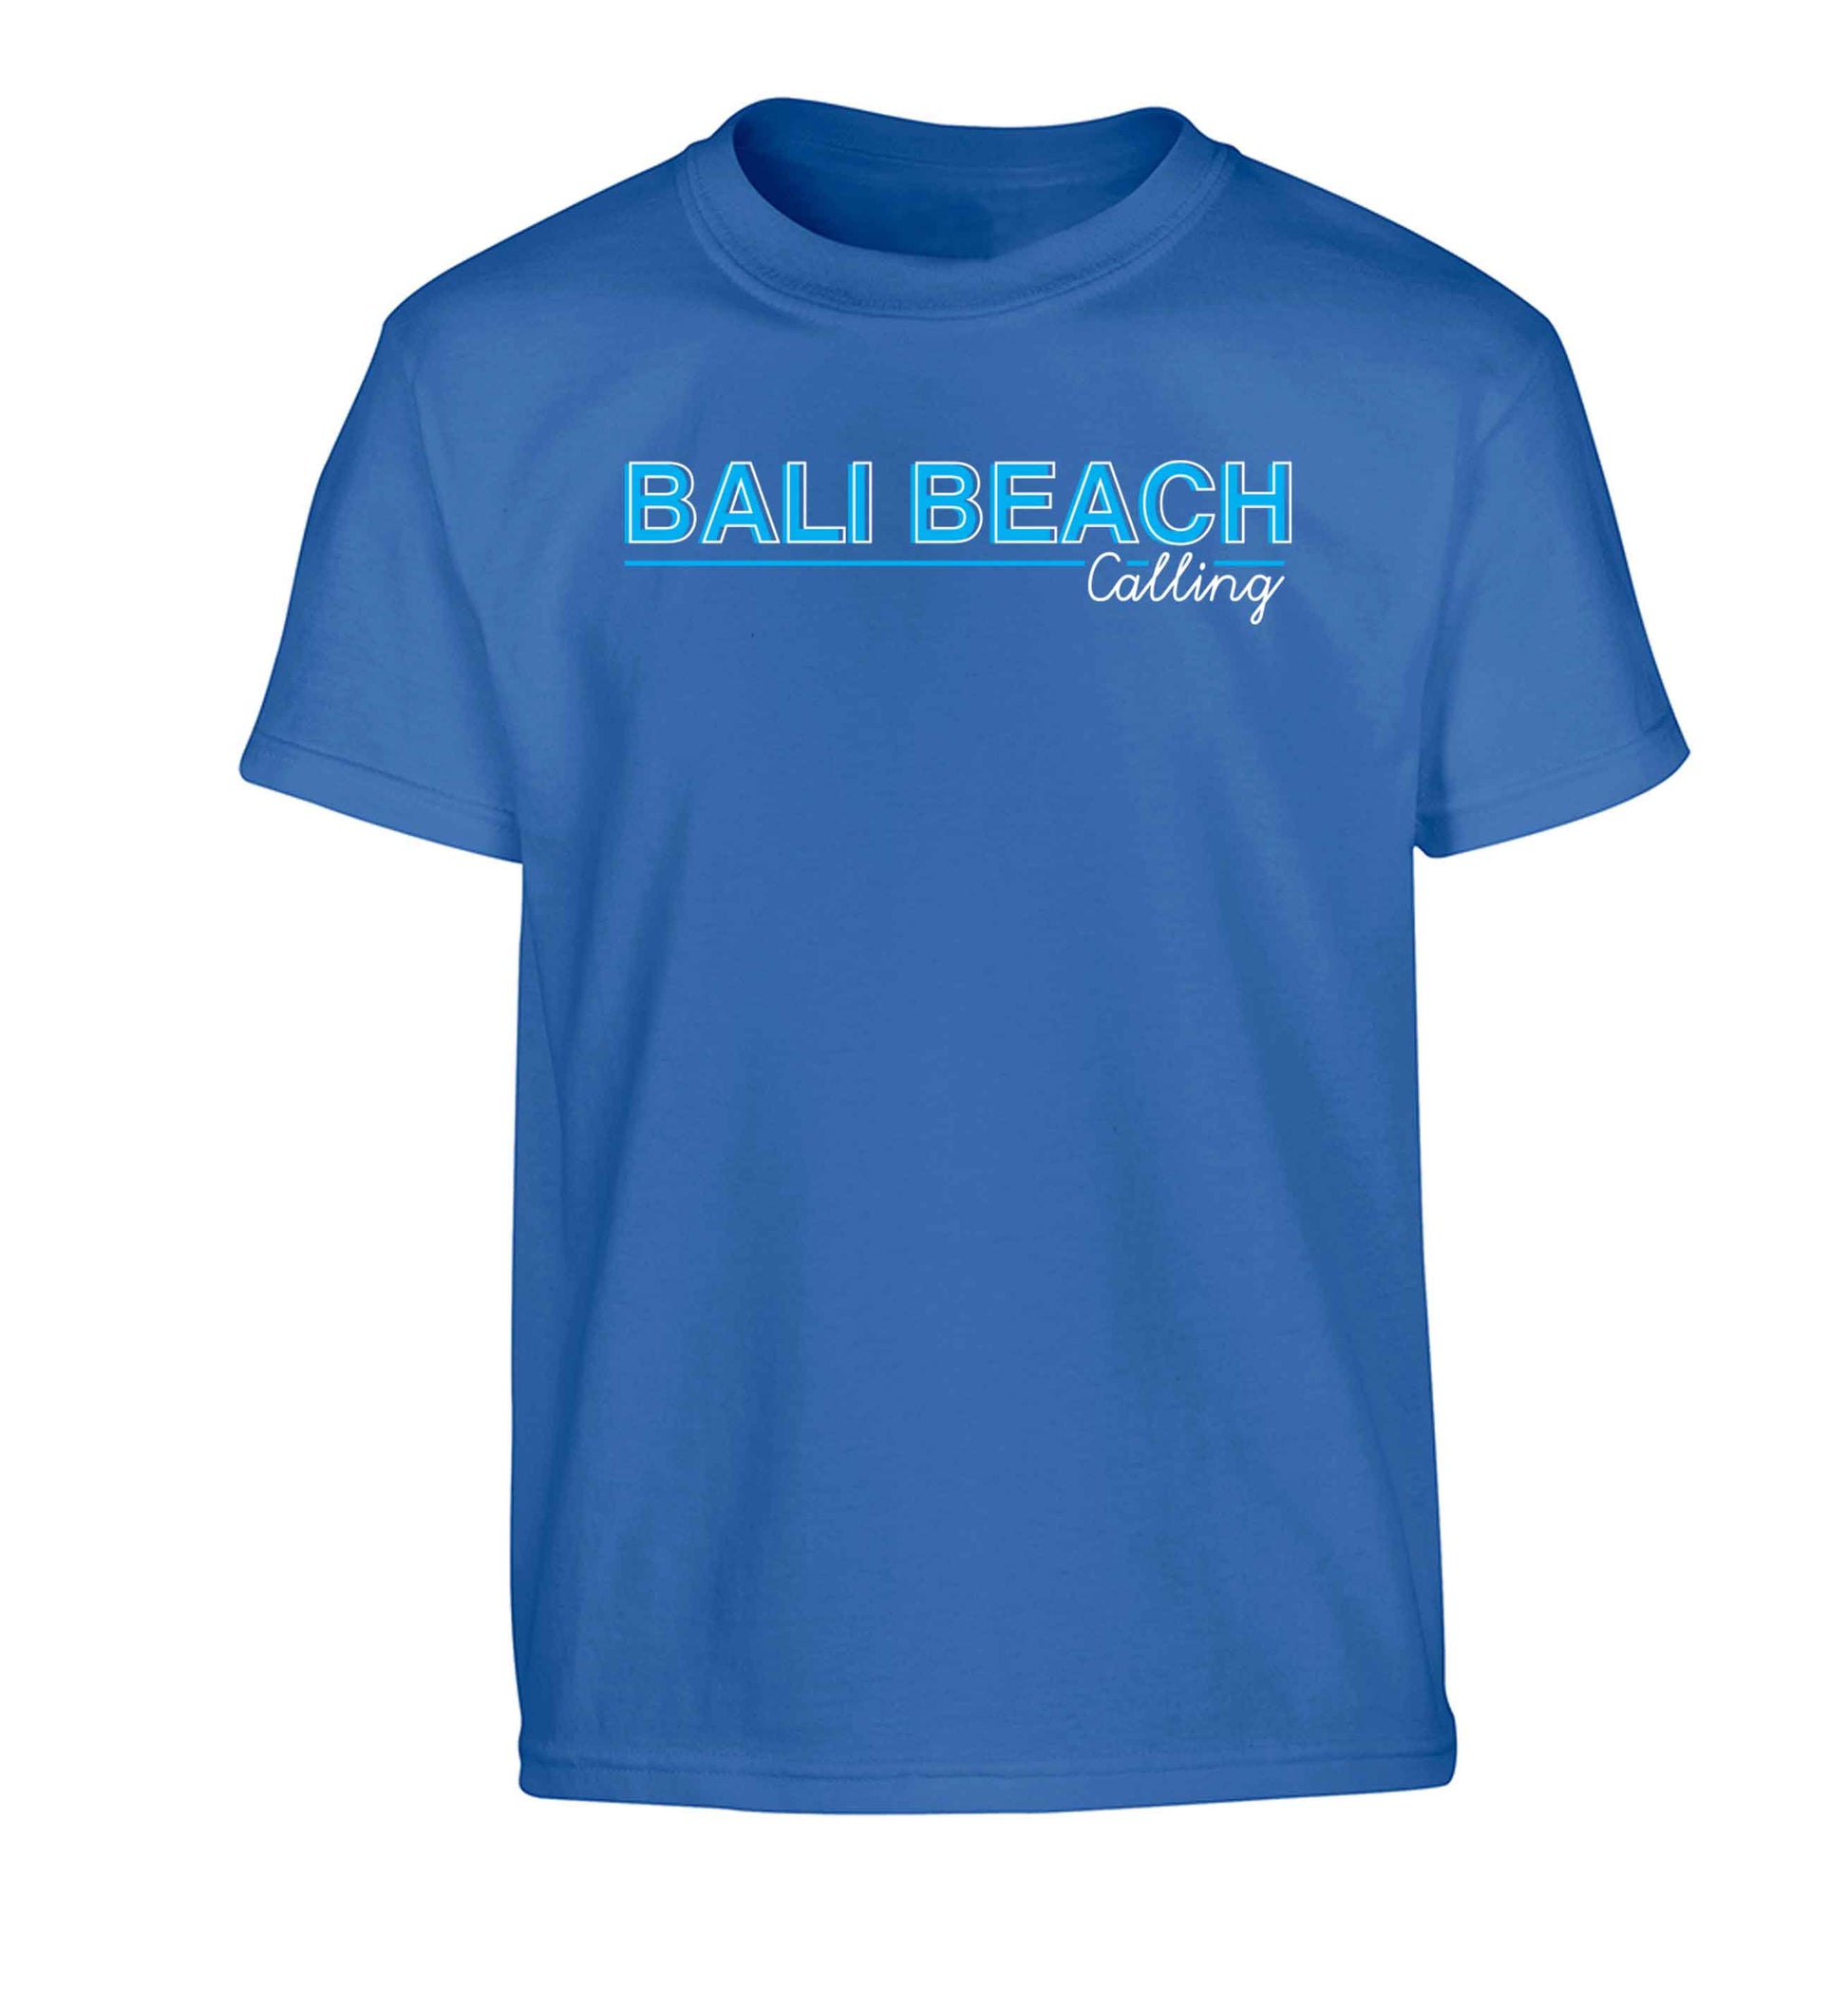 Bali beach calling Children's blue Tshirt 12-13 Years